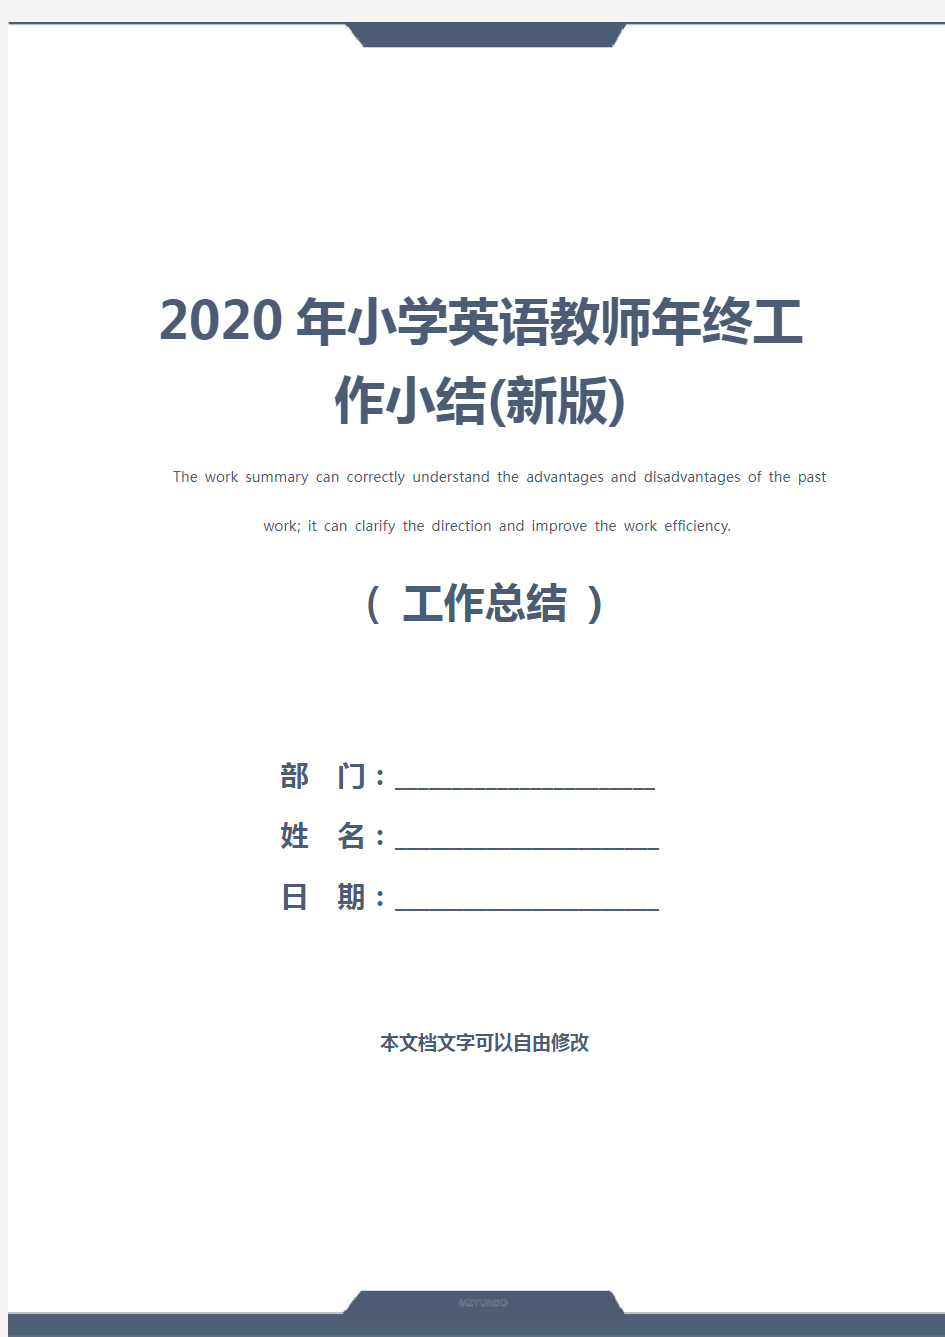 2020年小学英语教师年终工作小结(新版)